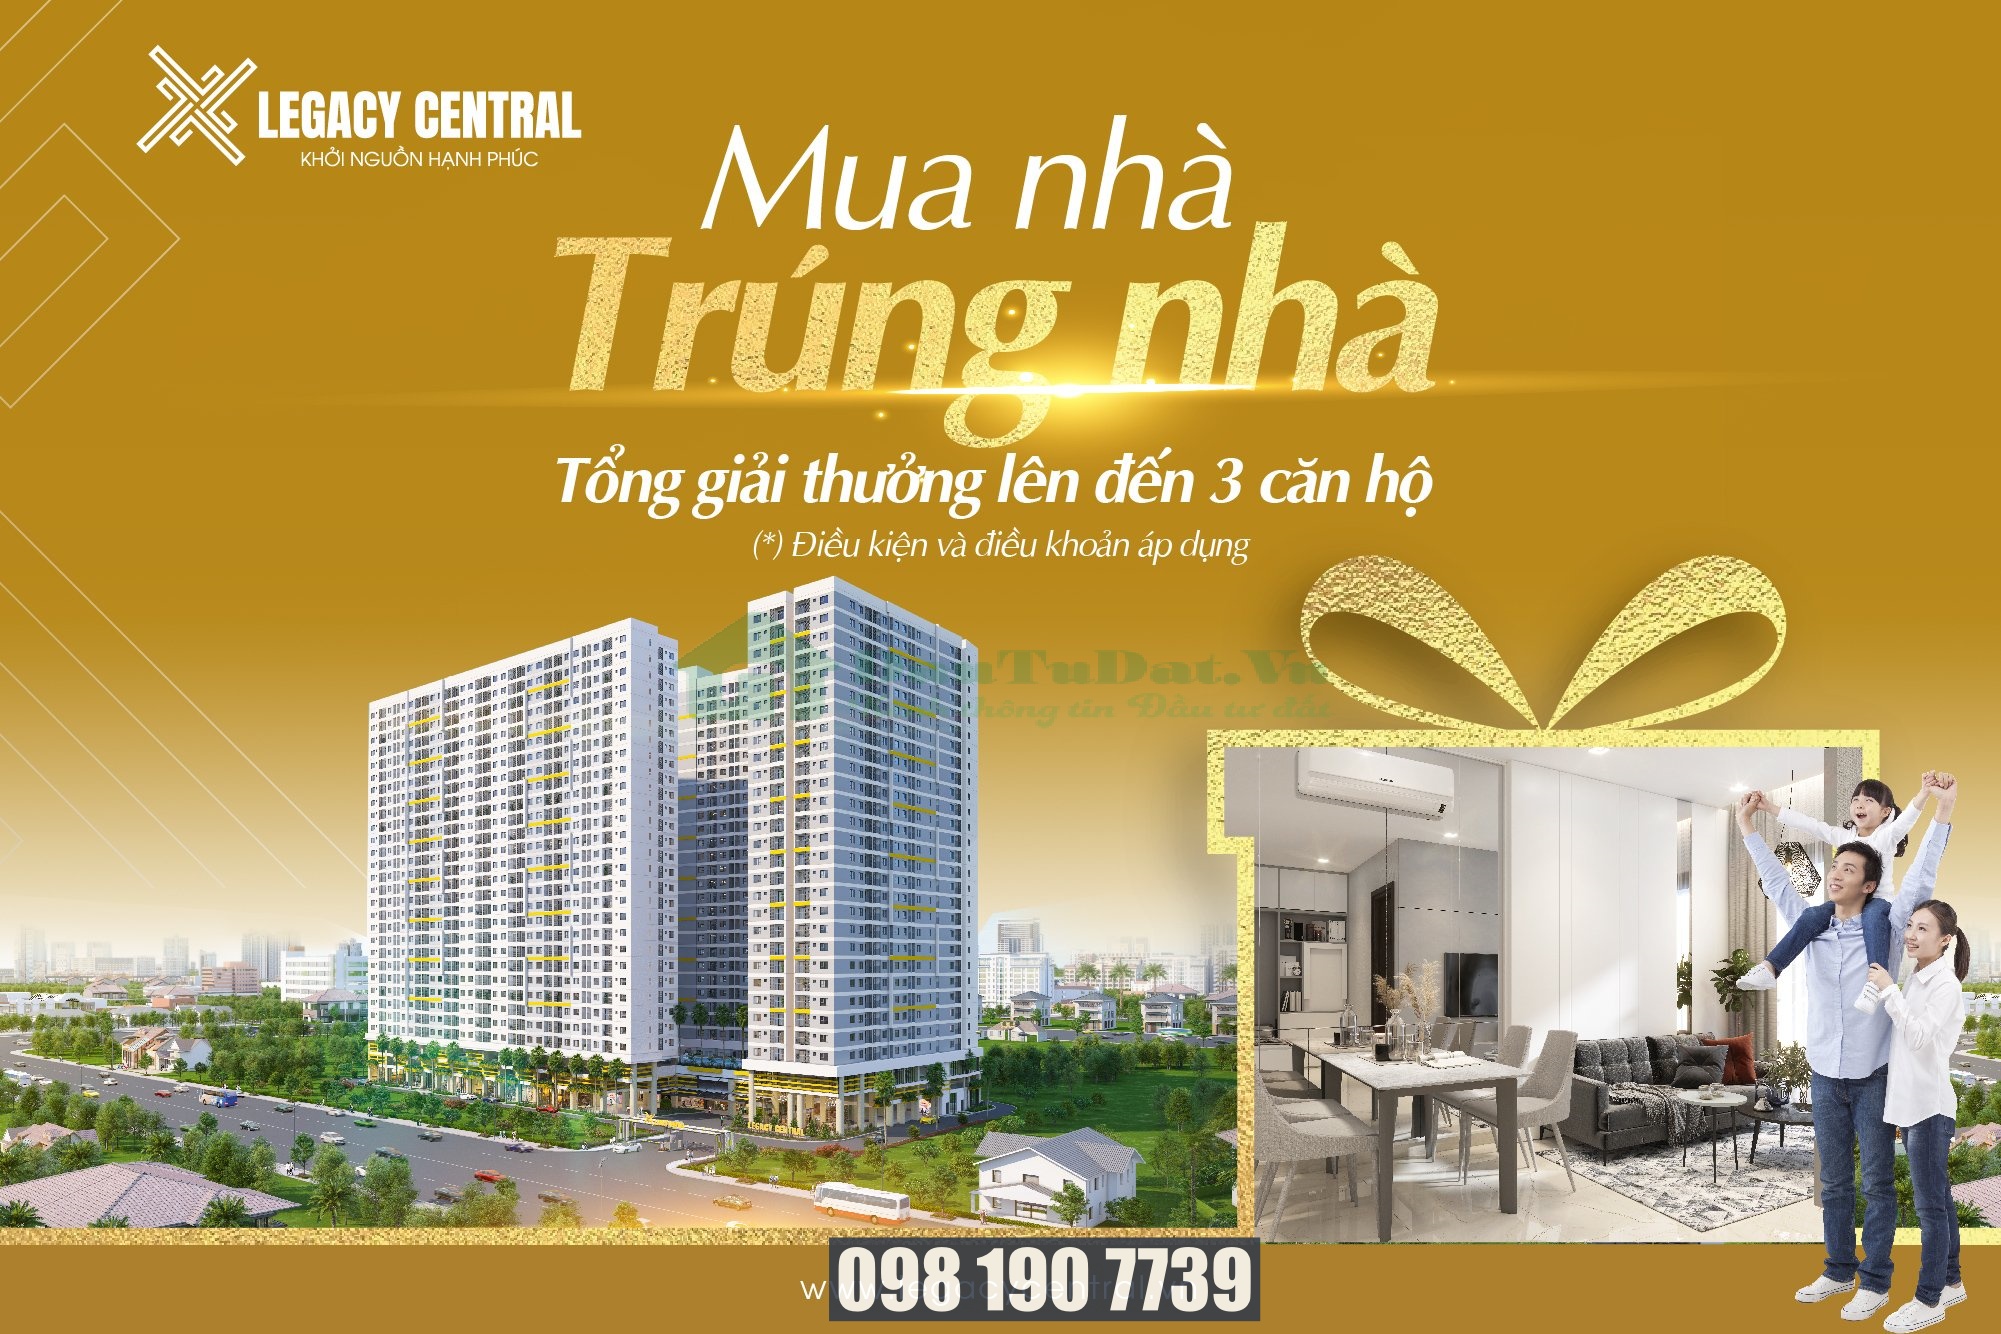 Dự án căn hộ Legacy Central tại Thuận An của Kim Oanh Group